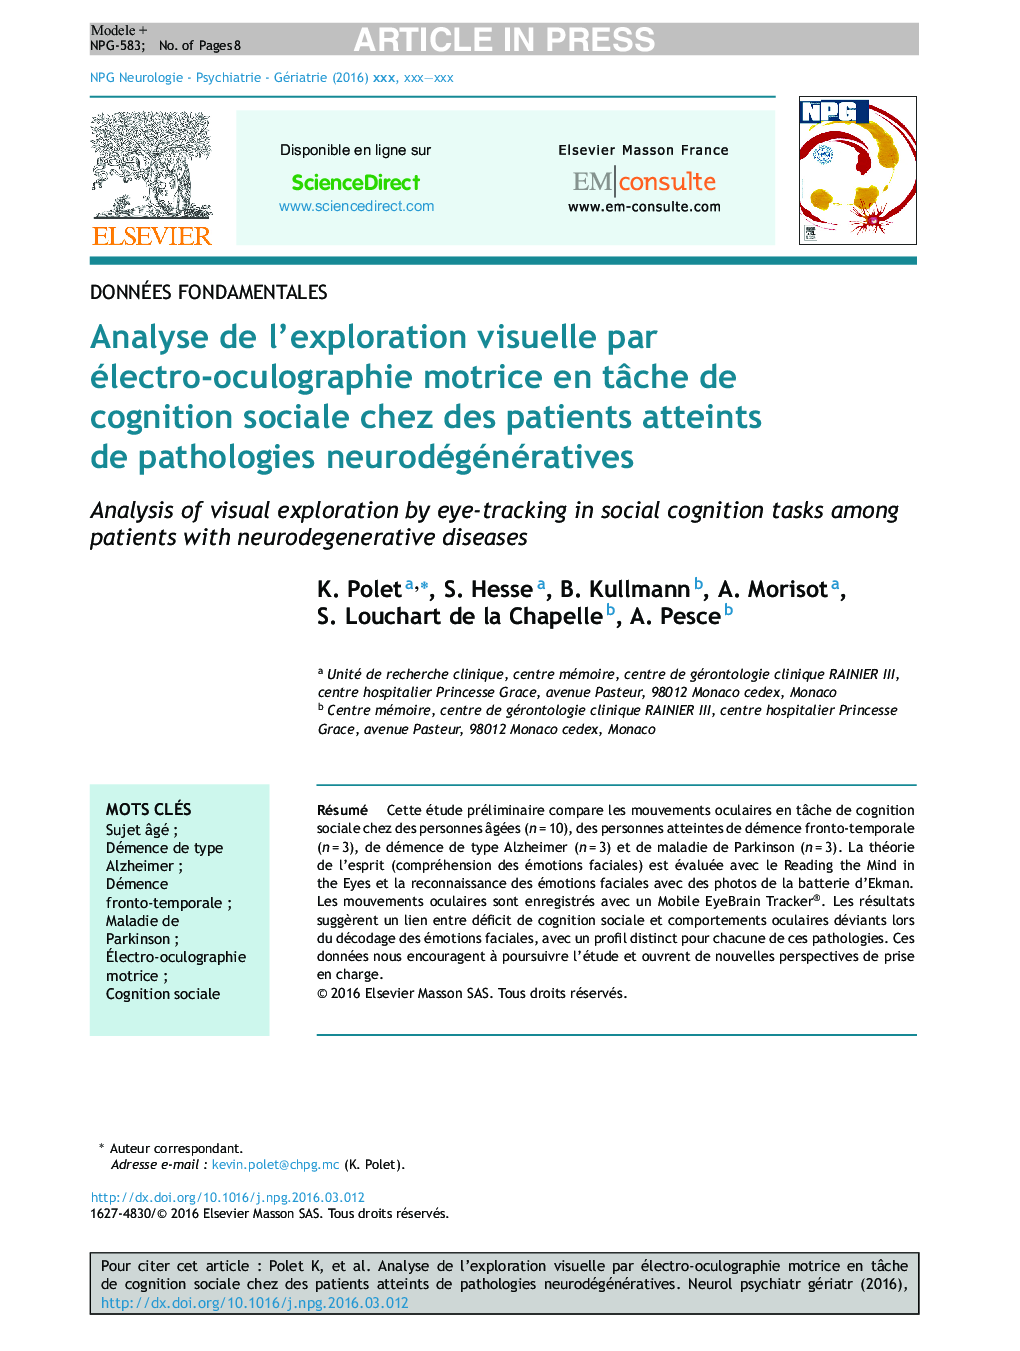 Analyse de l'exploration visuelle par électro-oculographie motrice en tÃ¢che de cognition sociale chez des patients atteints de pathologies neurodégénératives